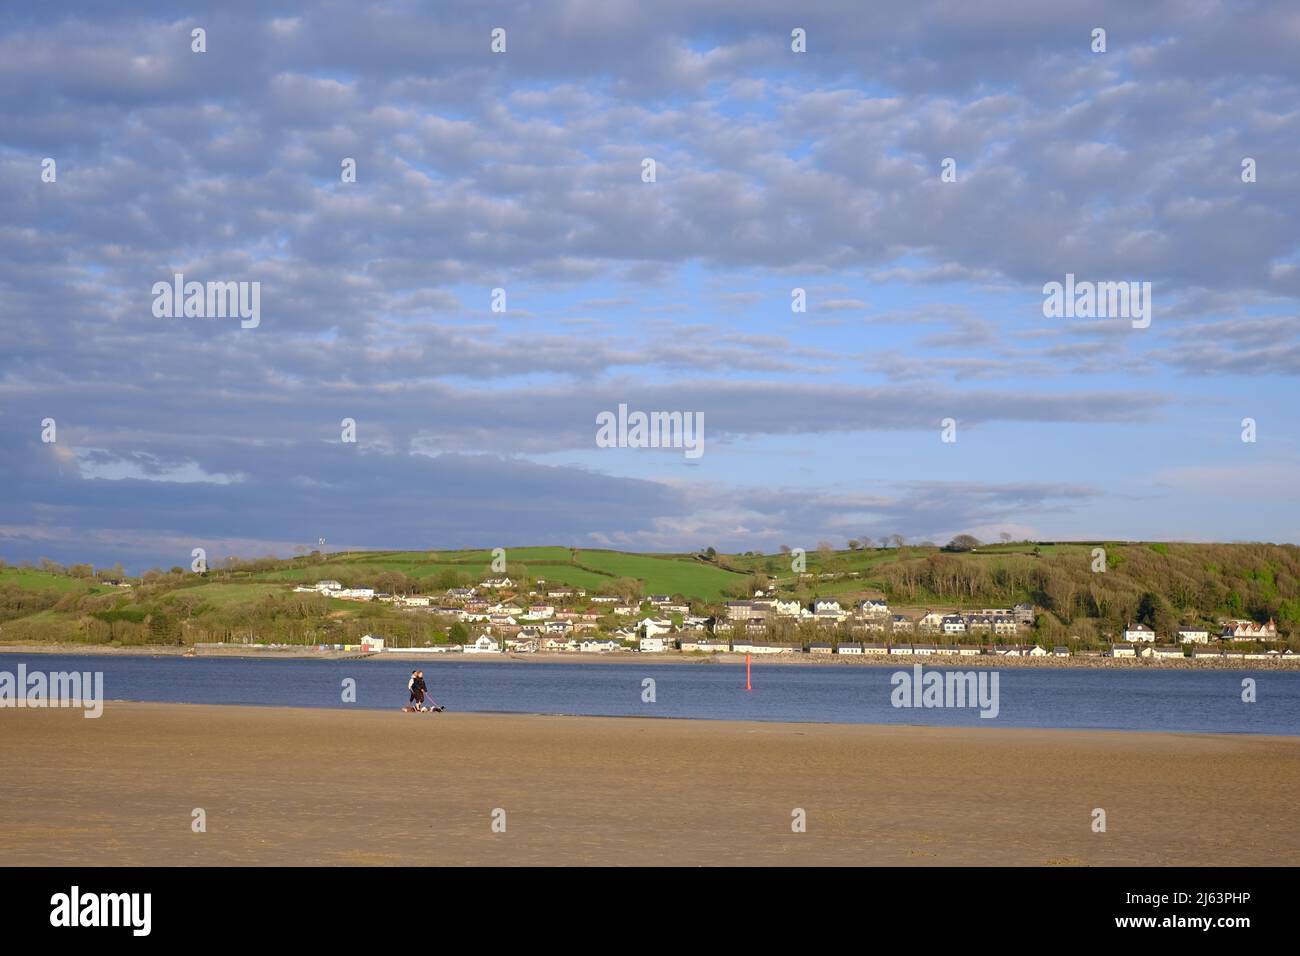 Vista desde la playa de Llansteffan cruzando el río Towy hacia Ferryside en la orilla opuesta del río. Carmarthenshire, Gales. Foto de stock